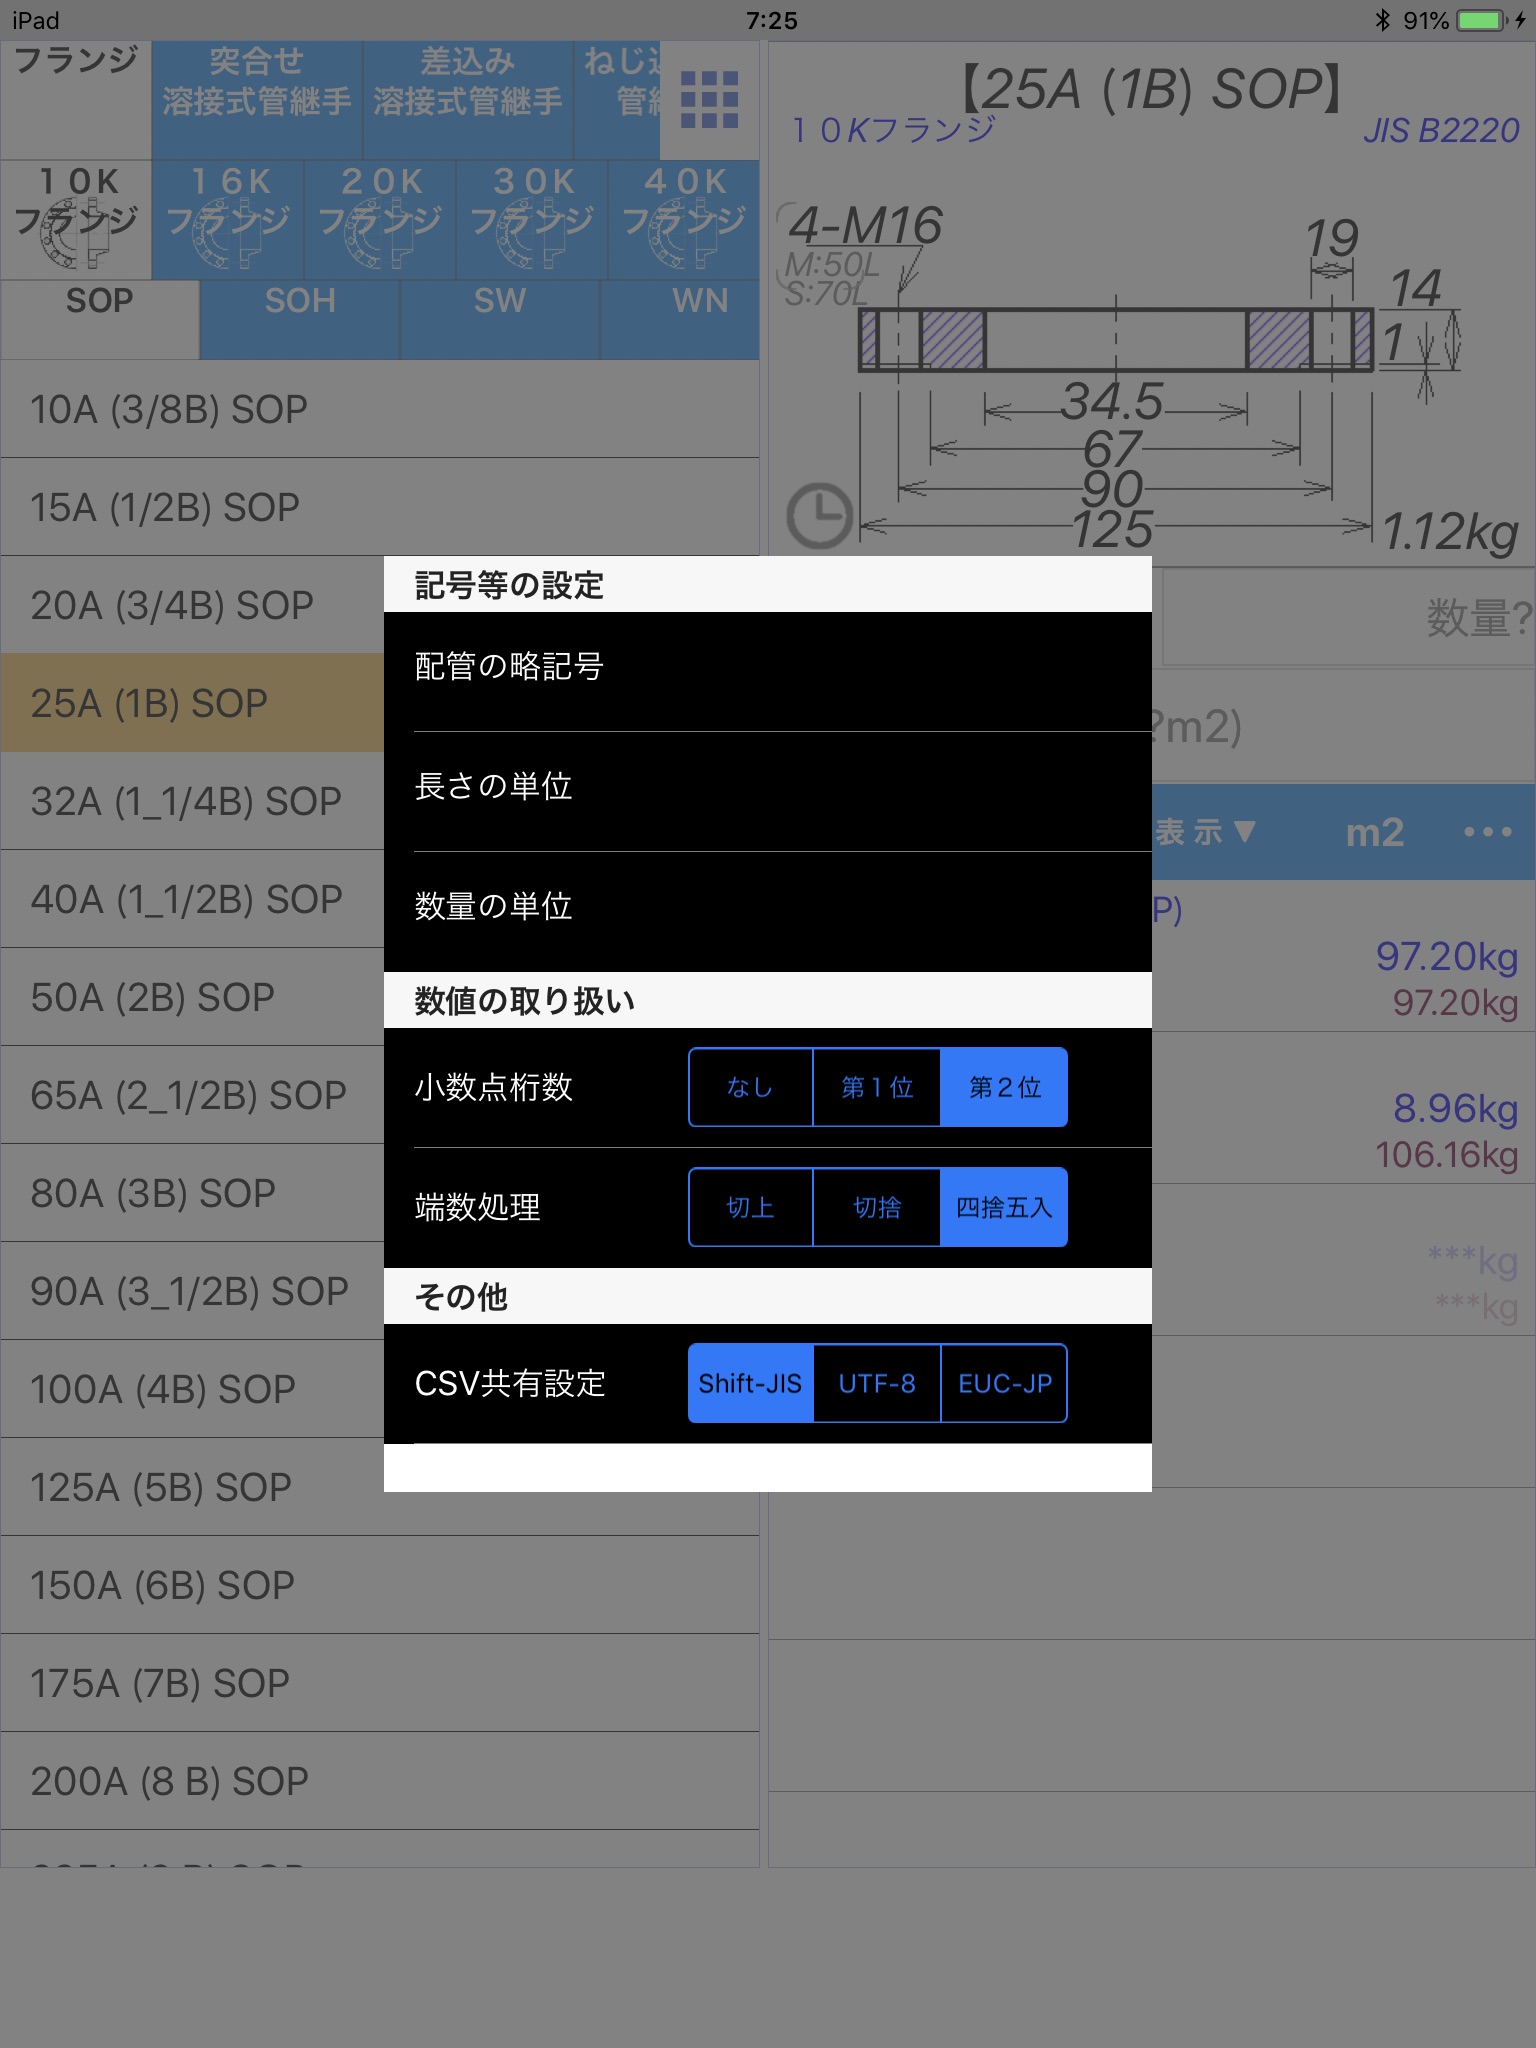 配管tap for iPad screenshot 4